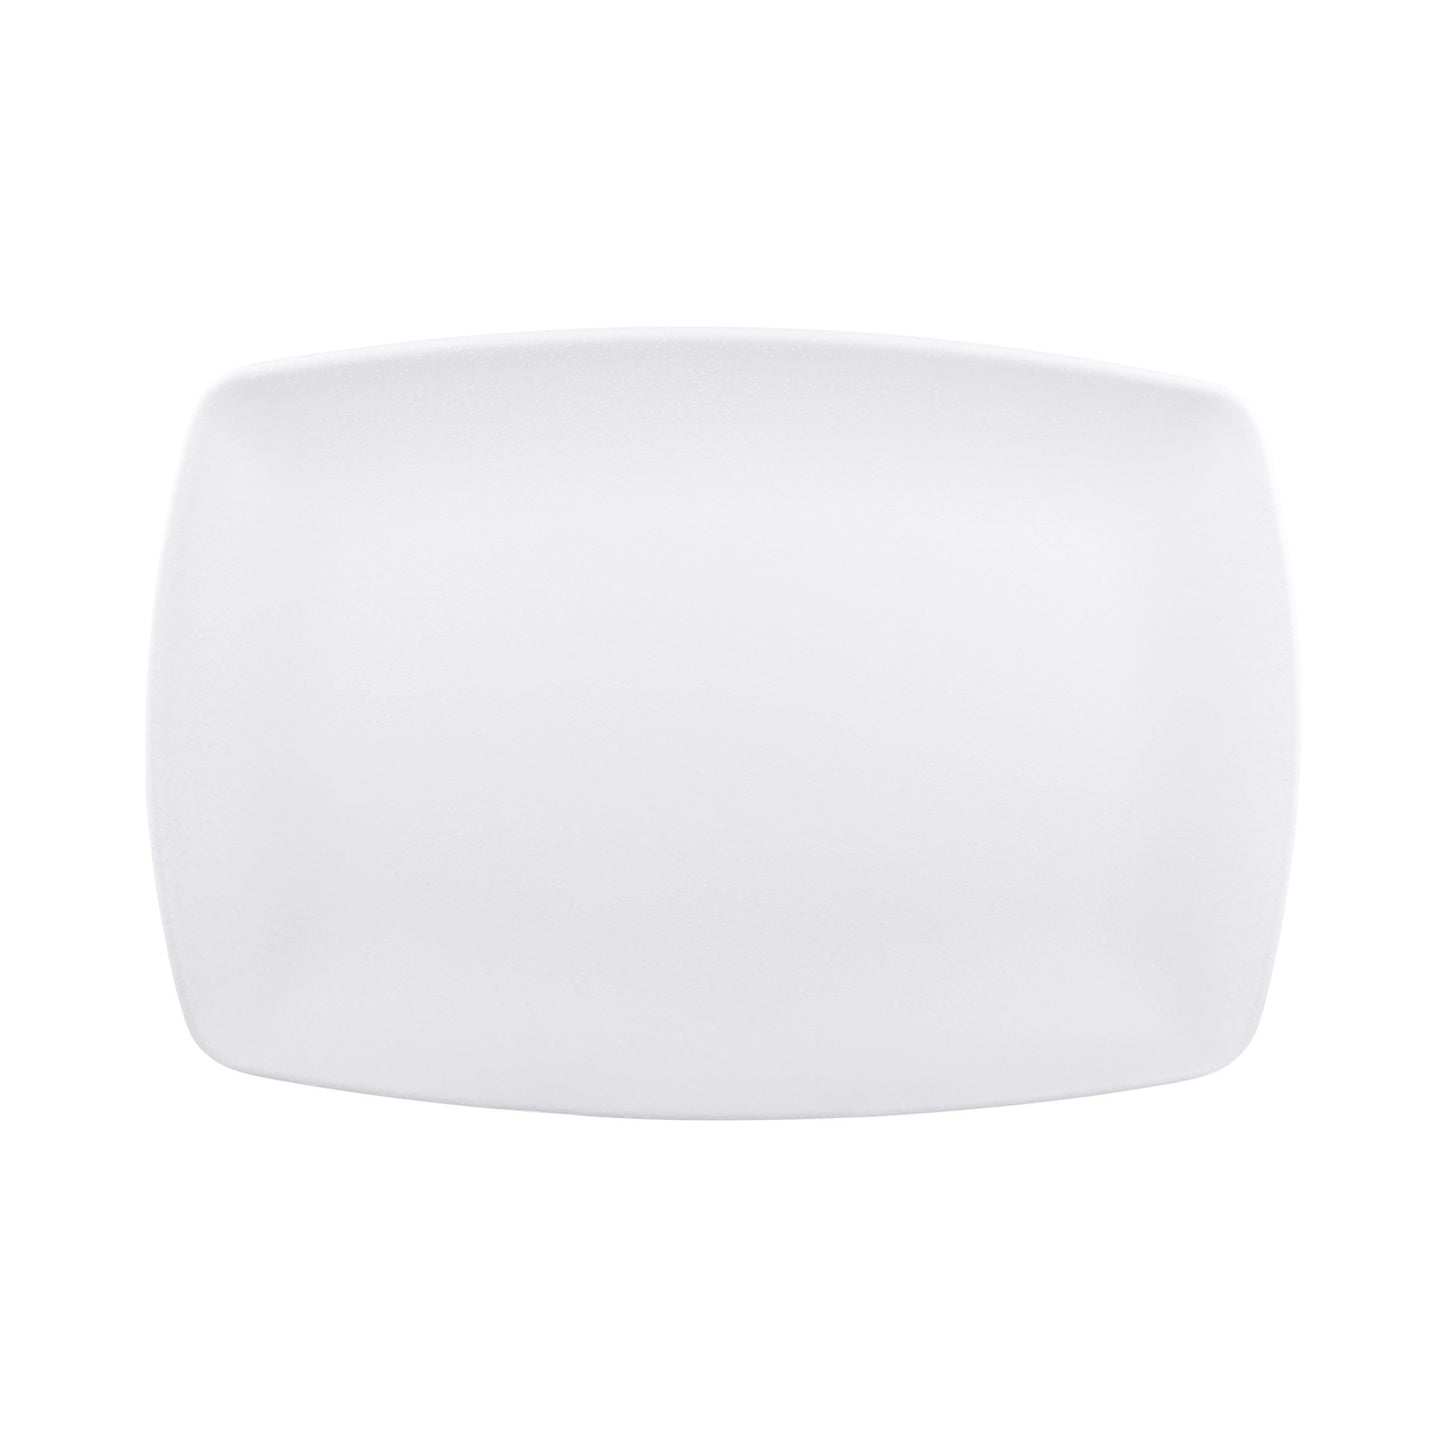 Melamine Rectangular Platter - White